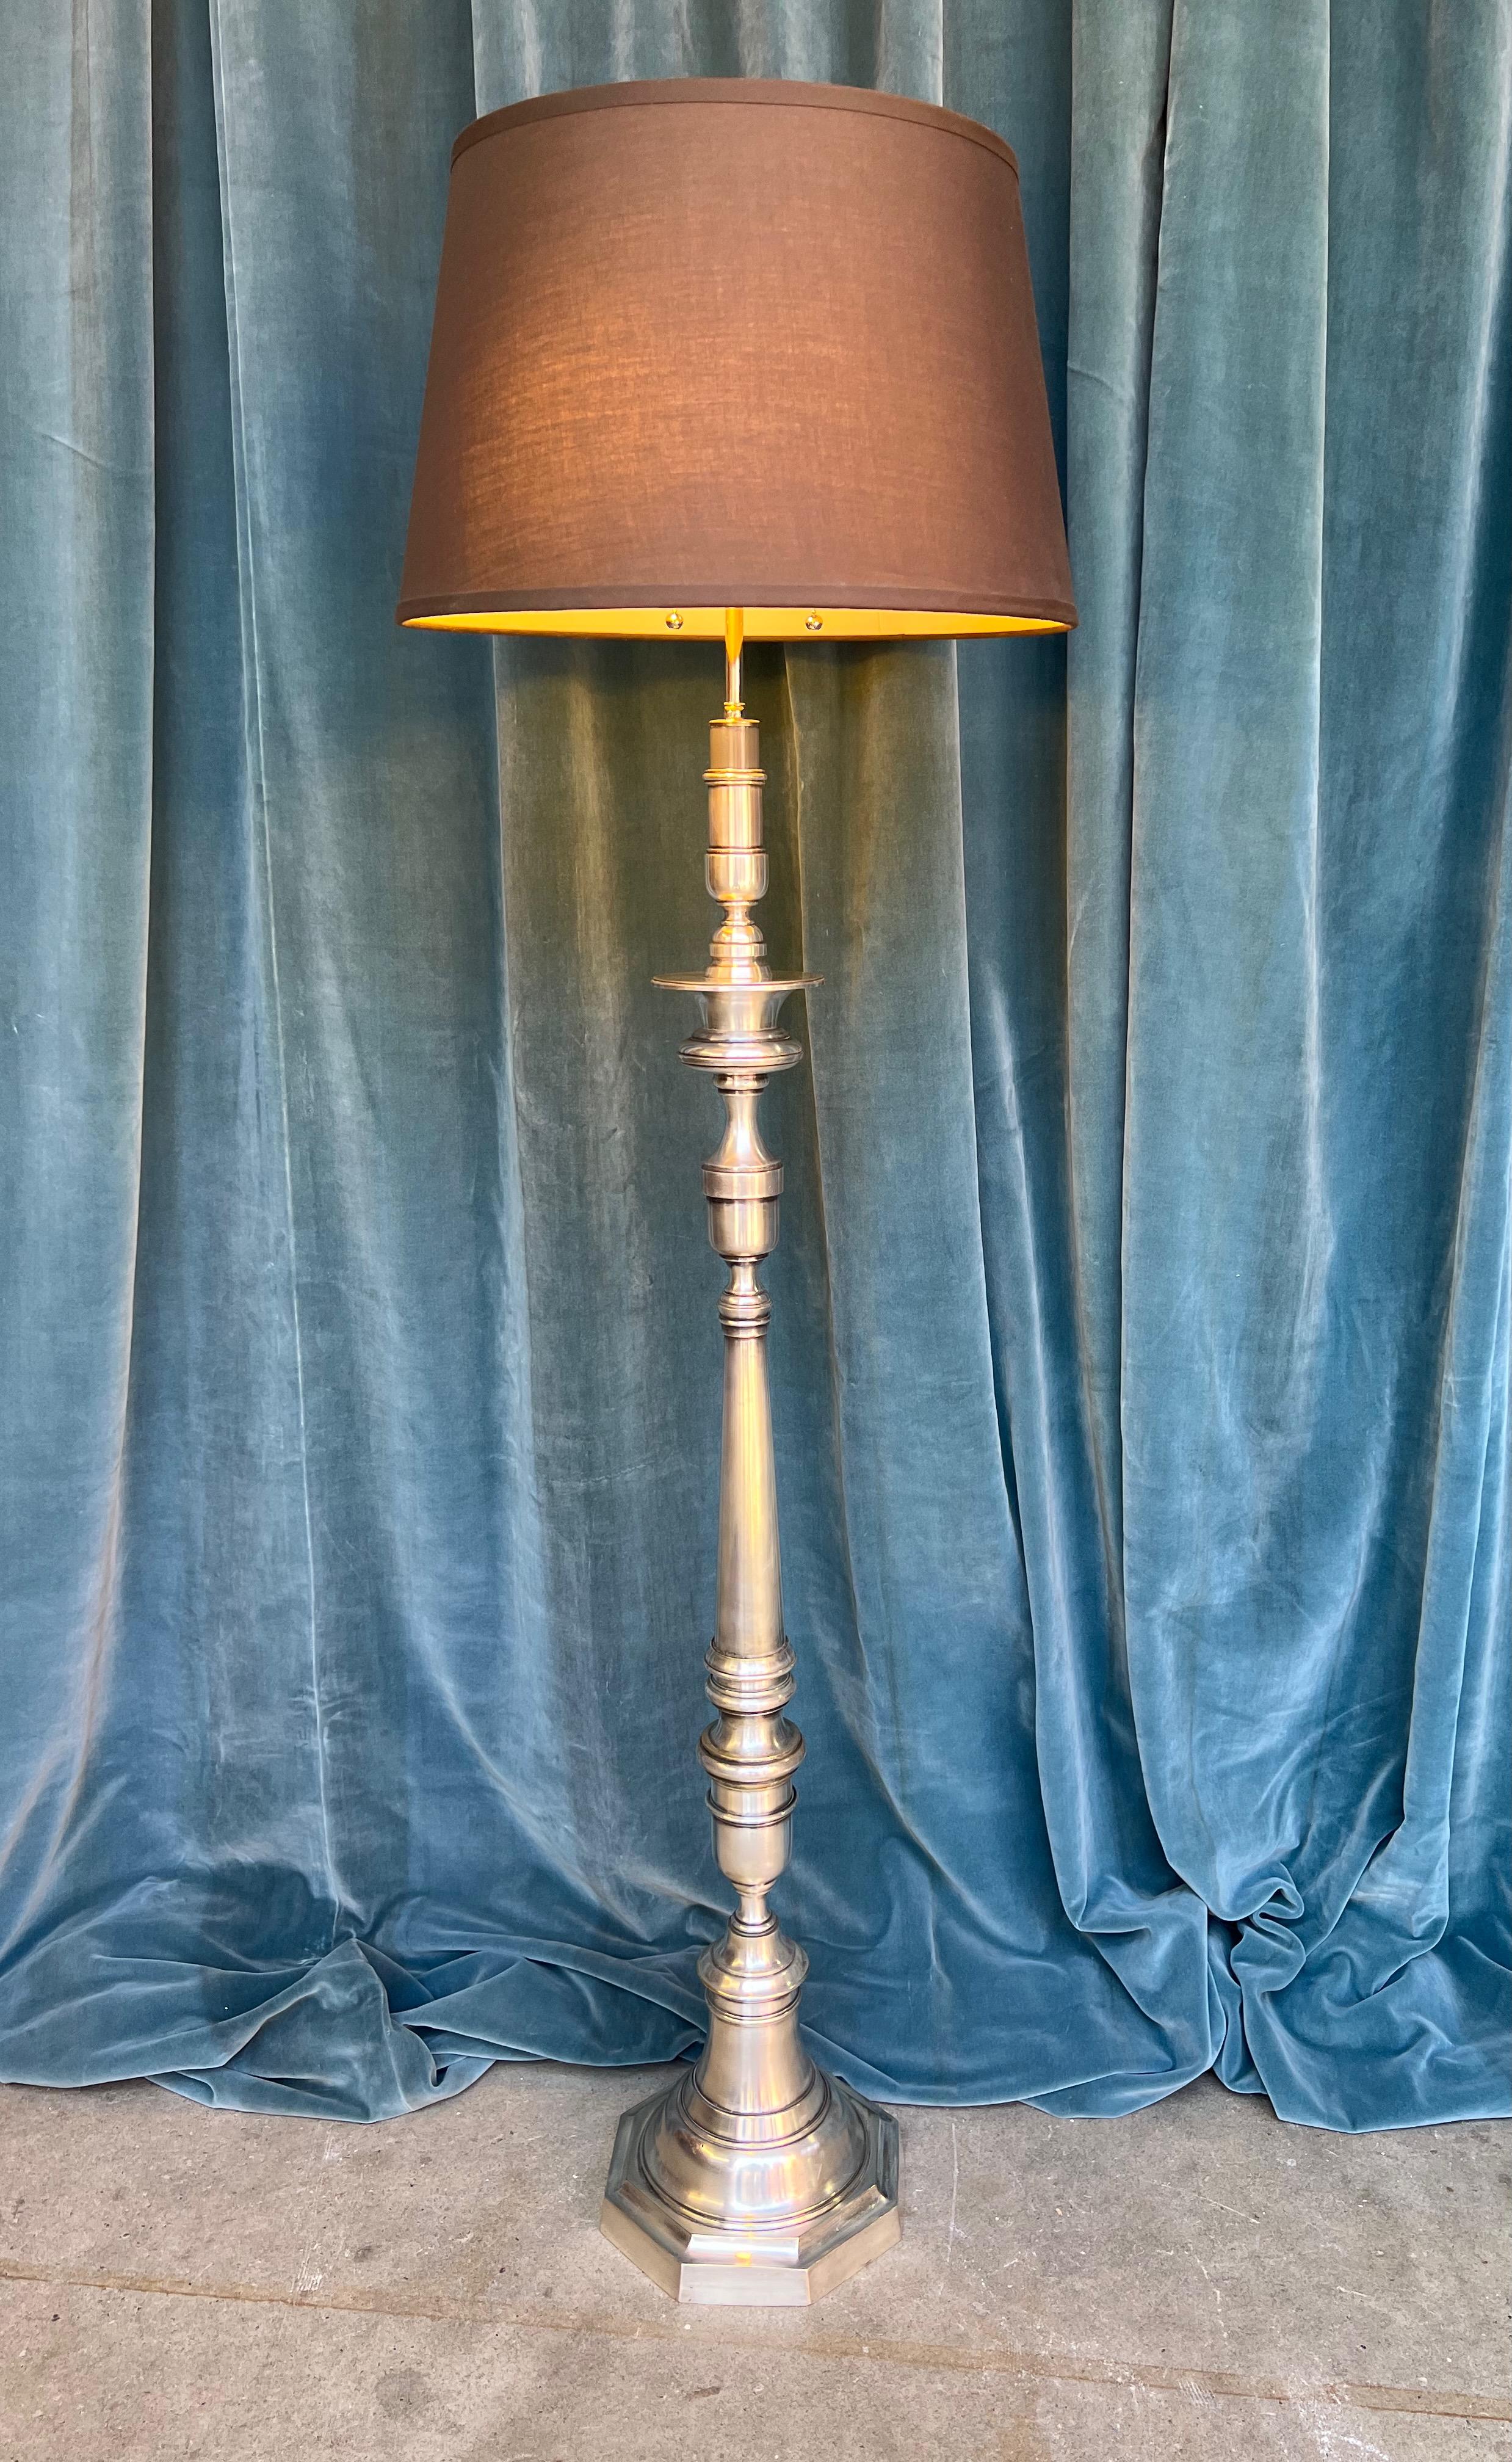 Voici un élégant lampadaire français des années 1940 plaqué argent, une pièce intemporelle qui ajoute sans effort un charme vintage à n'importe quel décor. Ce lampadaire sophistiqué est fabriqué de manière experte en laiton argenté et en bronze,